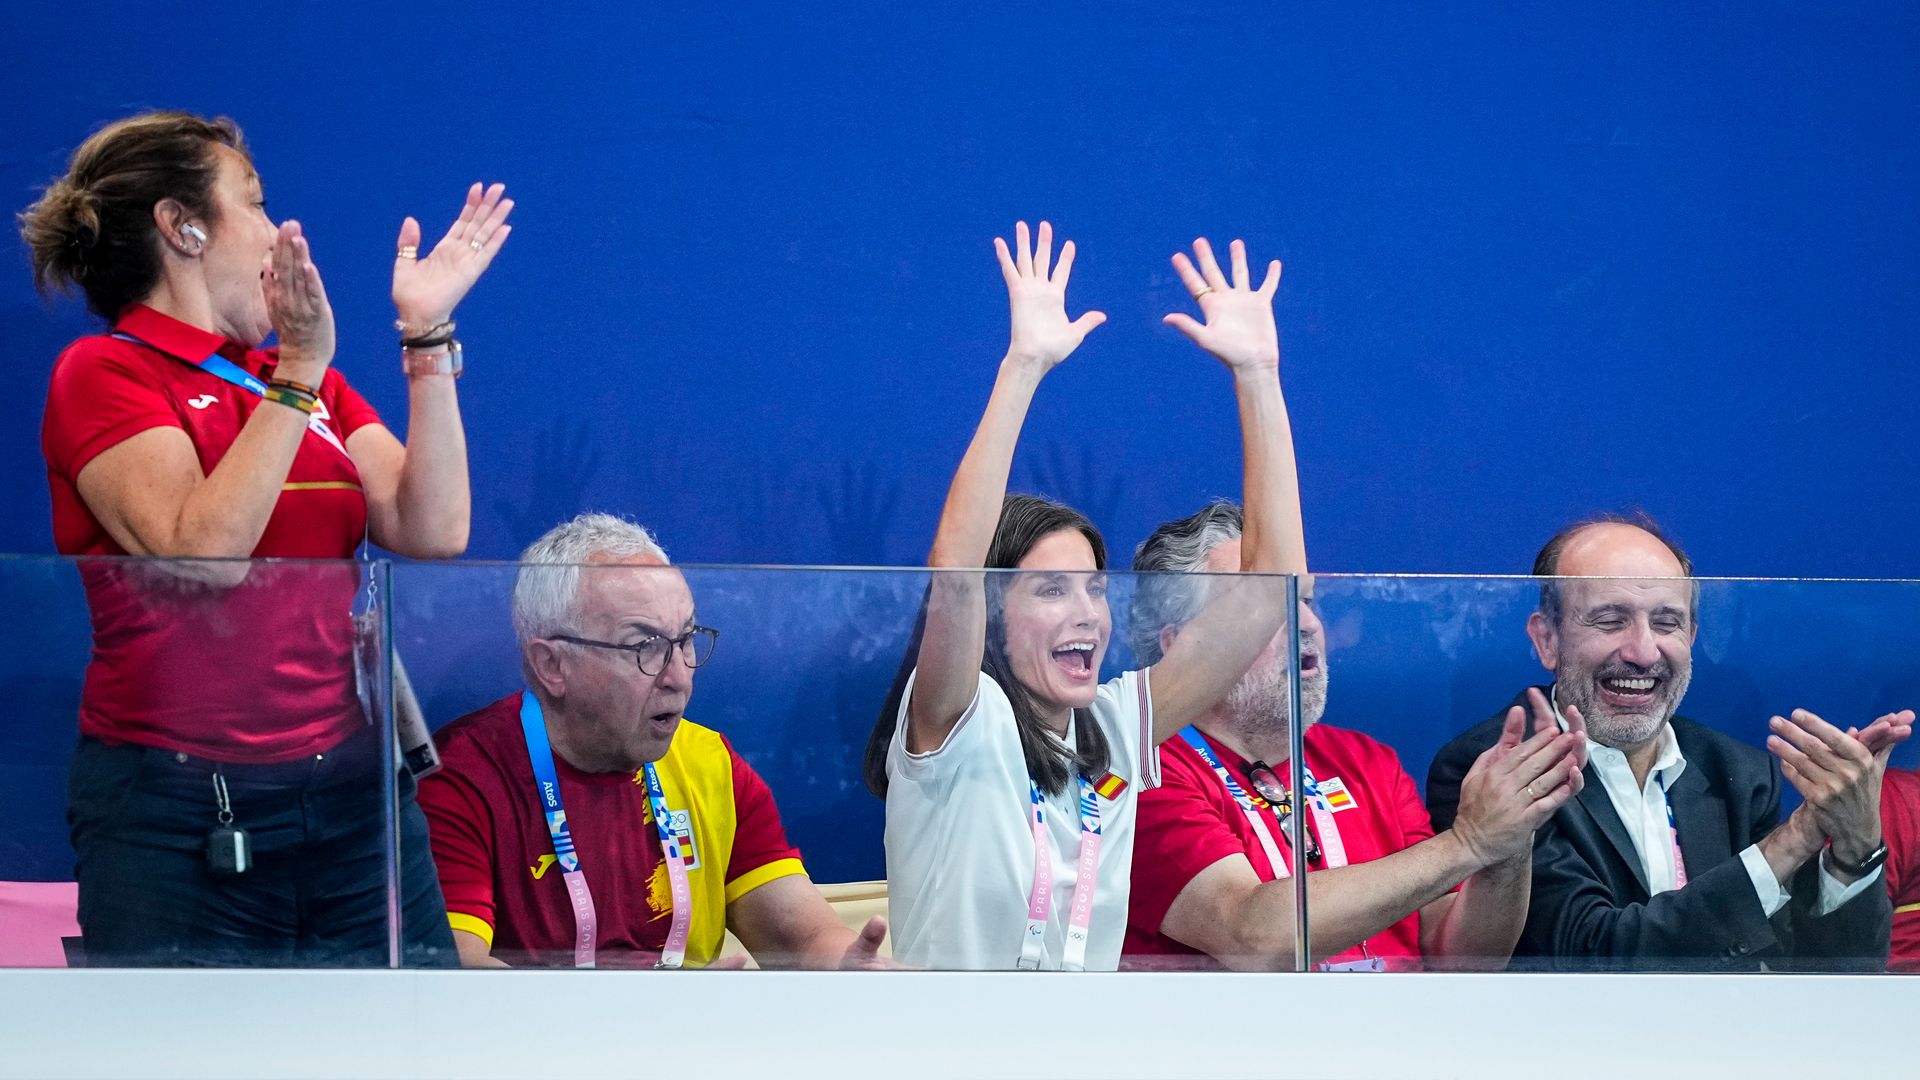 La reina Letizia animando al equipo femenino de waterpolo en el Centro Acuático, en París 2024